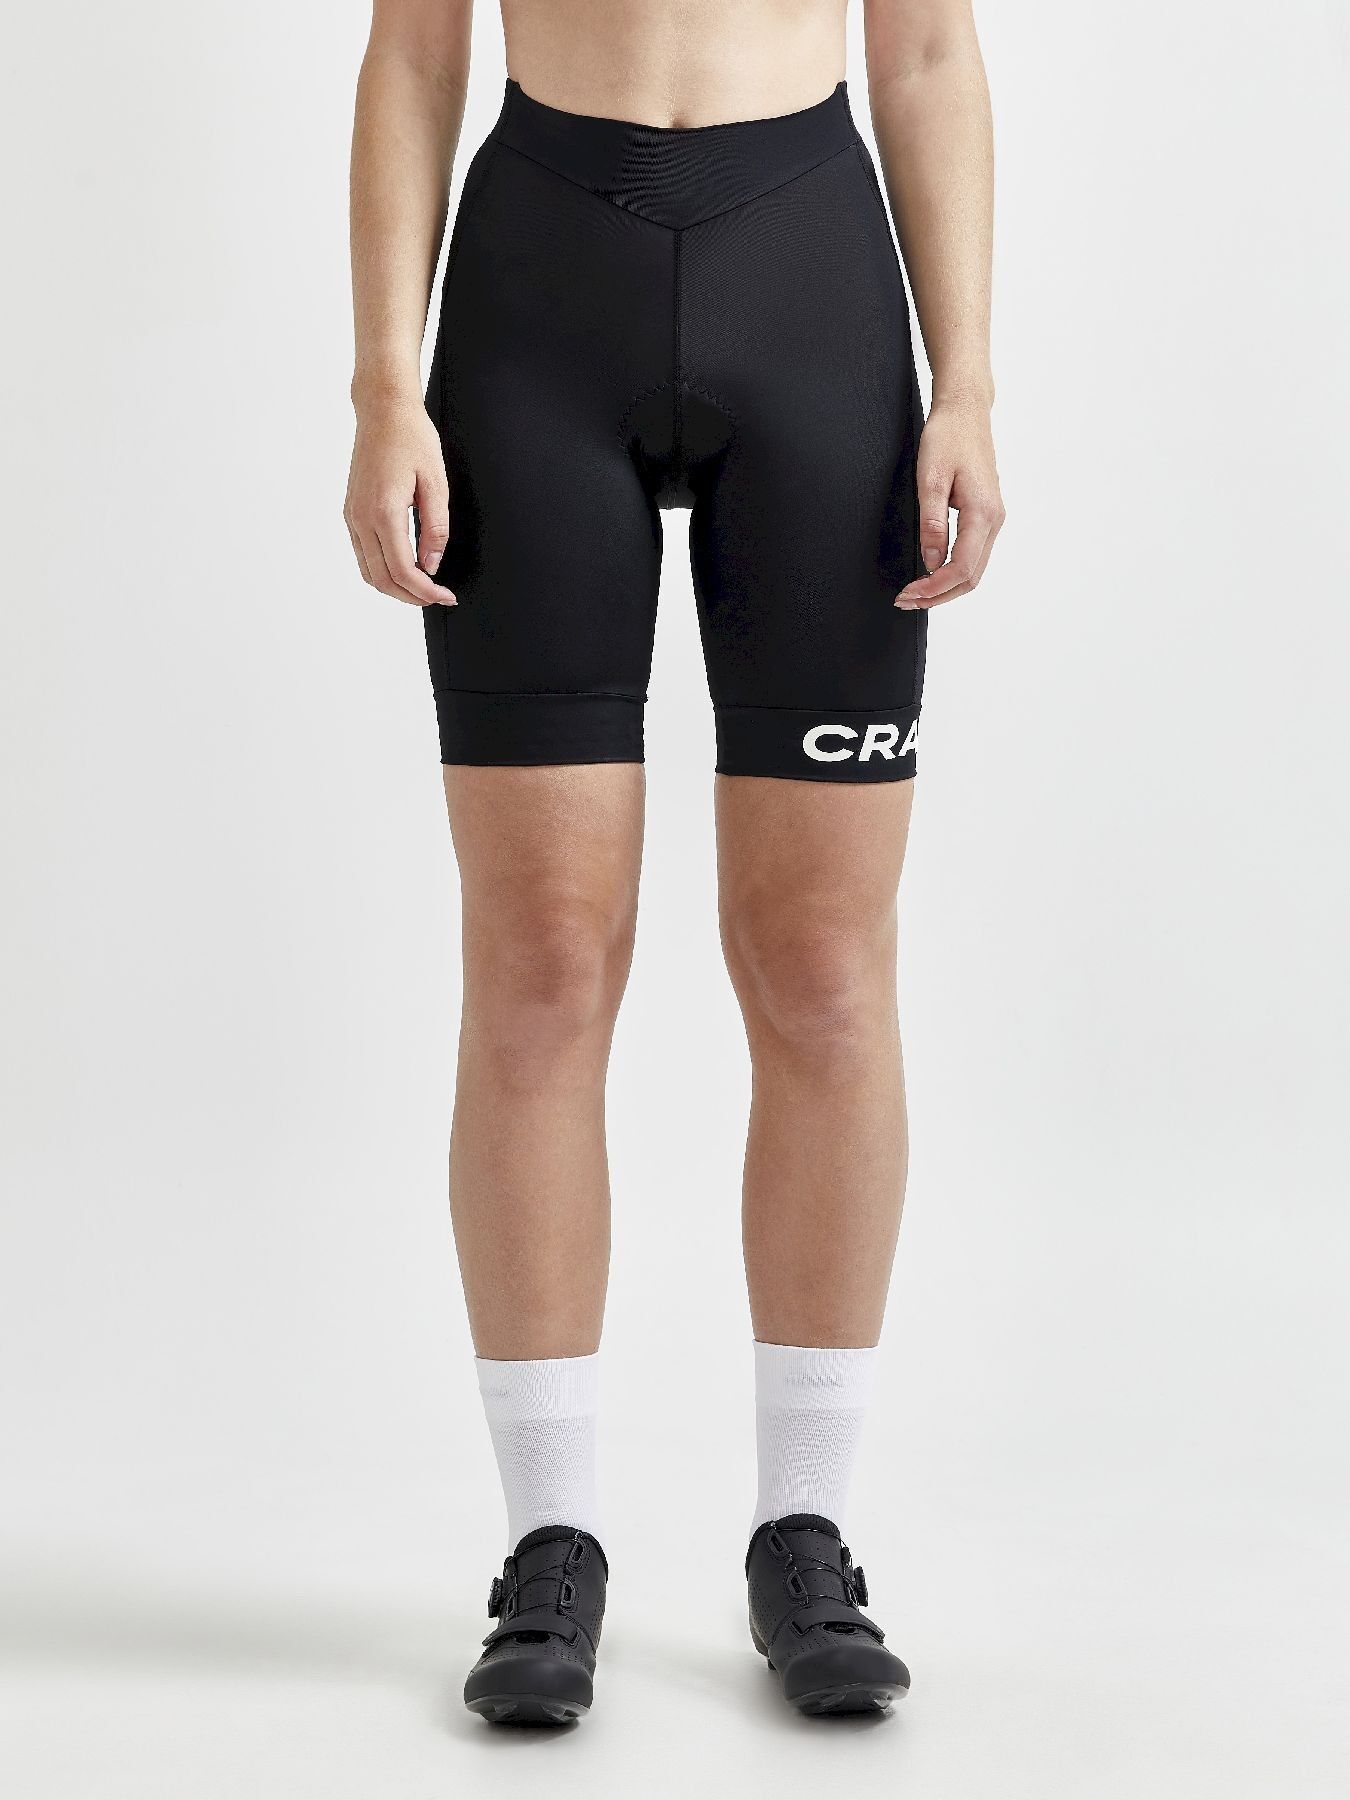 Craft Core Endurance Shorts - Fietsbroek - Dames